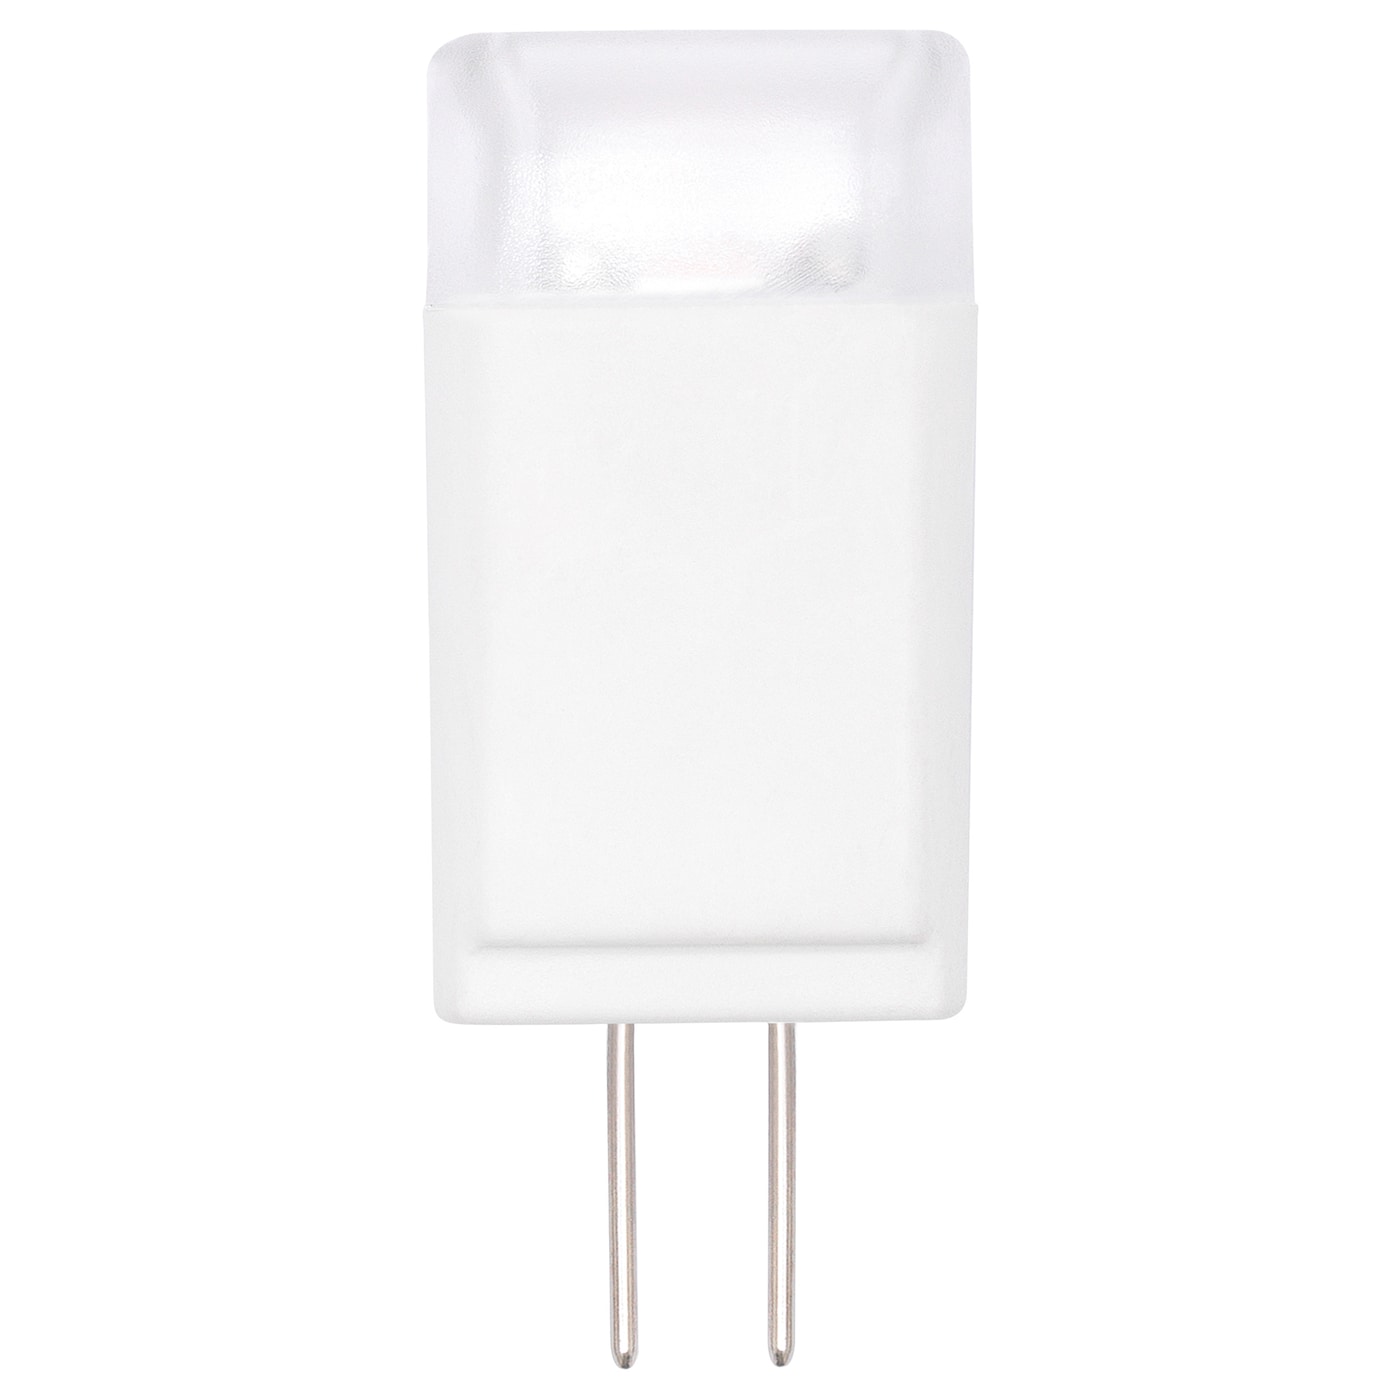 RYET Светодиодная лампа G4 100 лм, белый опал IKEA